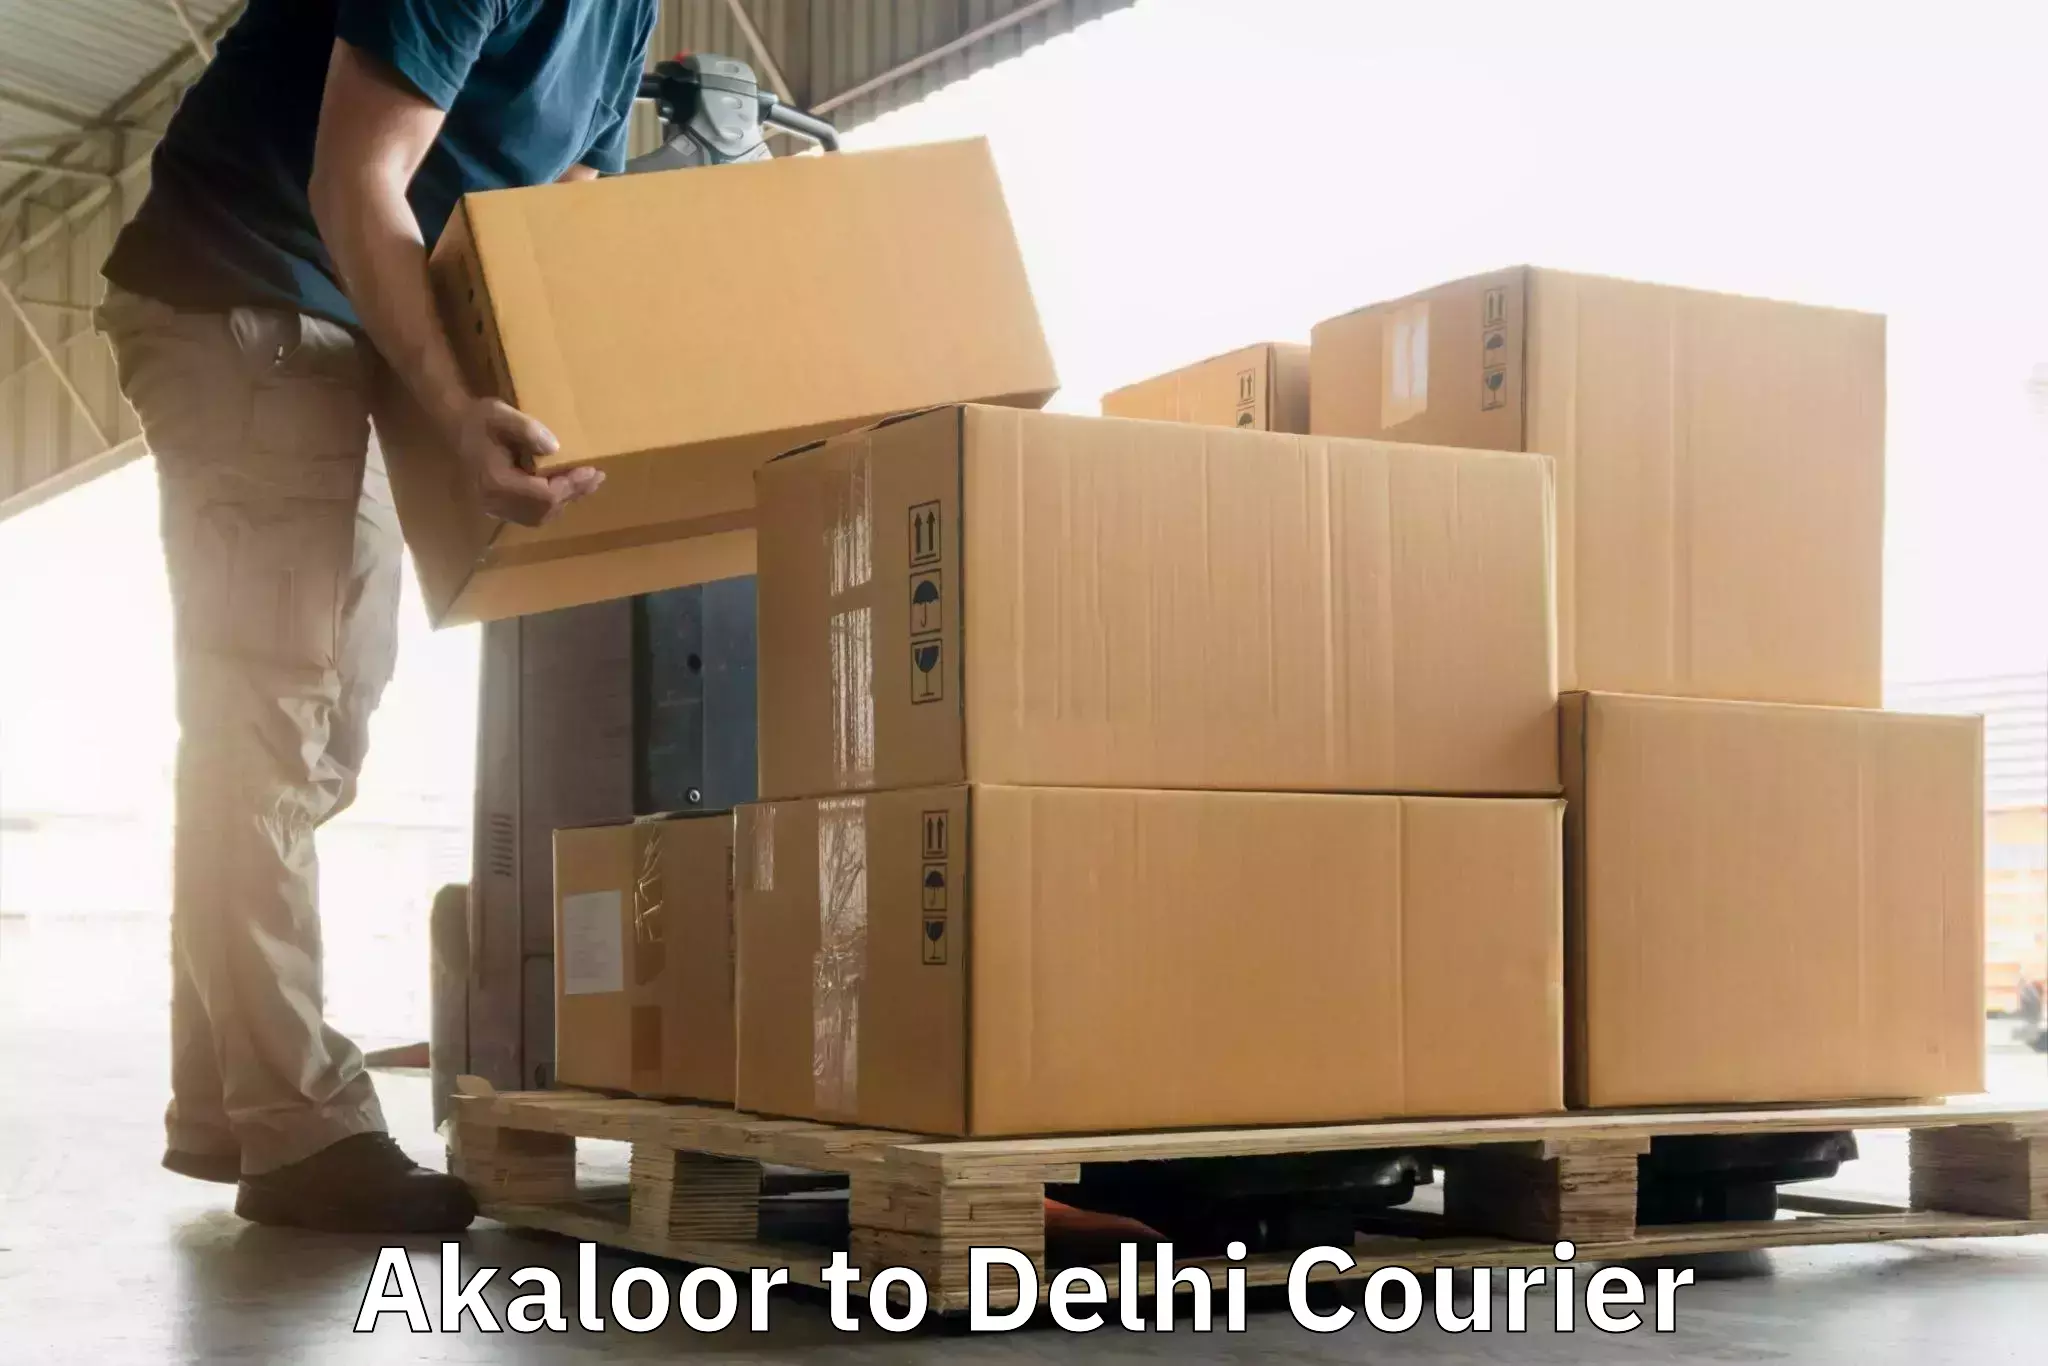 Ocean freight courier Akaloor to Delhi